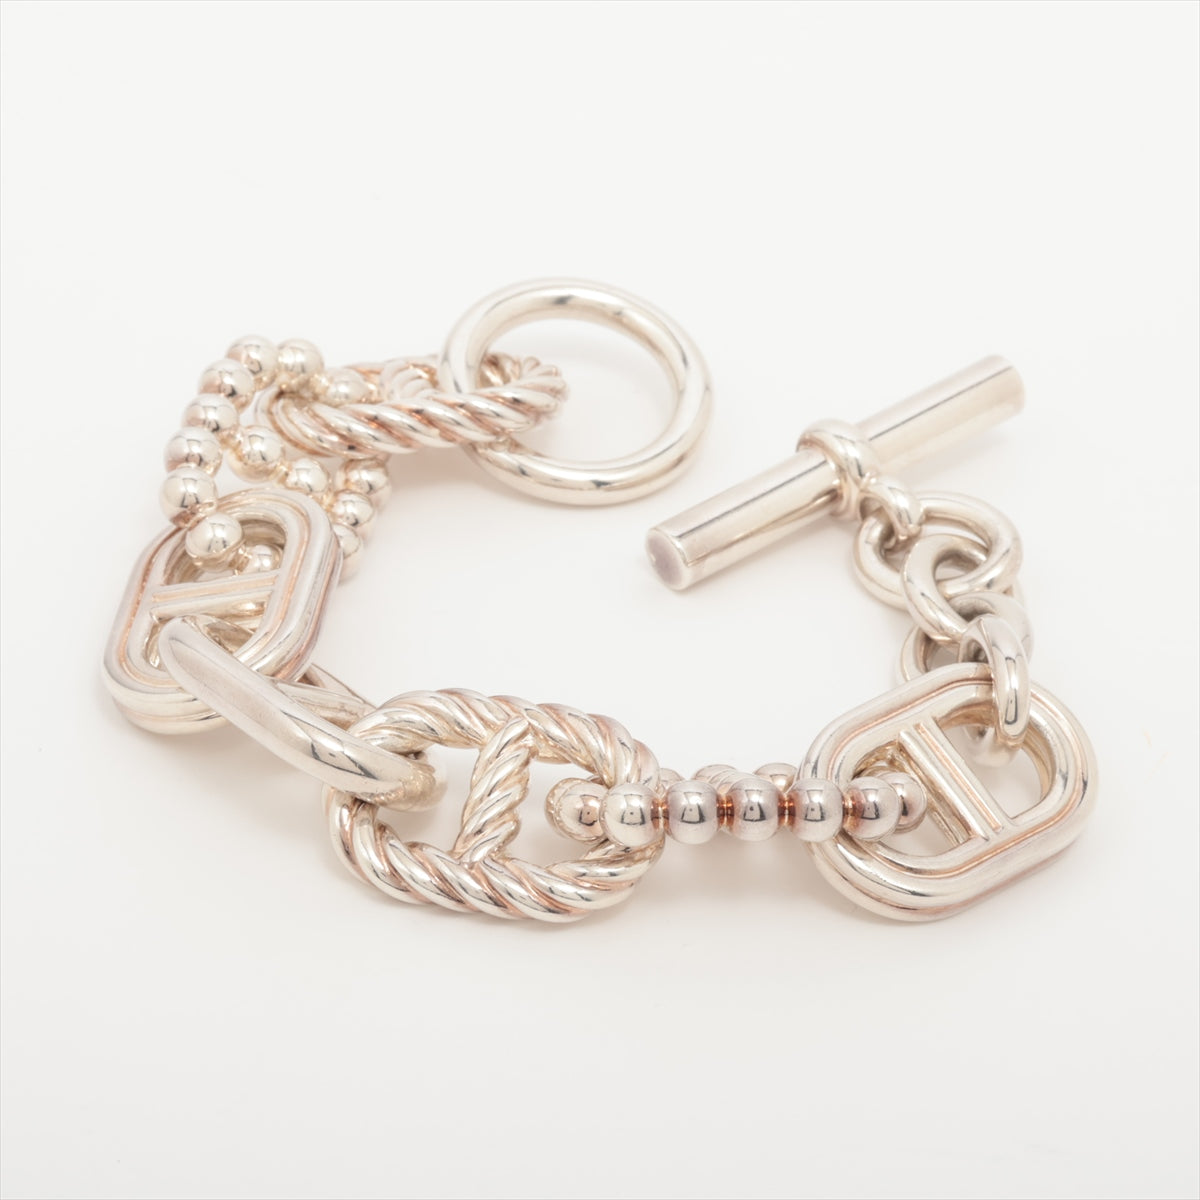 Hermès Chaîne d'Ancre Parade Torsade TGM Bracelet 925 180.0g Silver